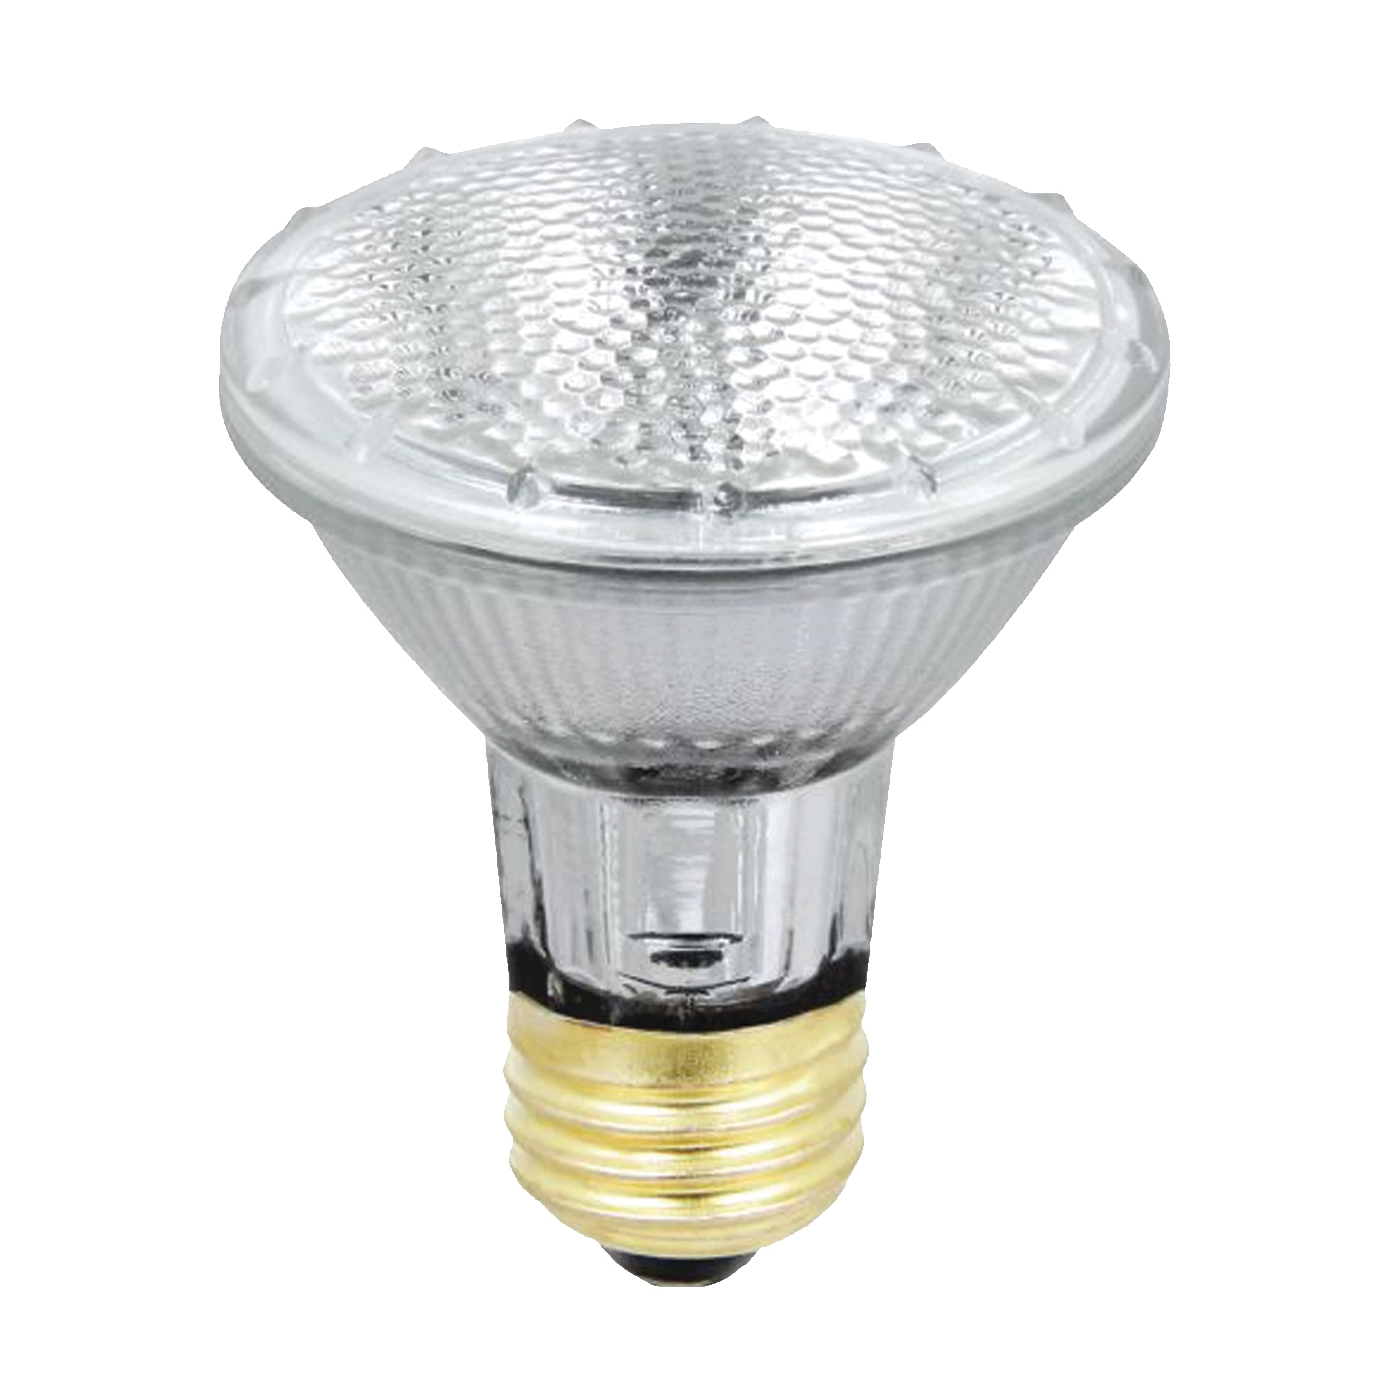 38PAR20/QFL/ES/2 Halogen Bulb, 38 W, Medium E26 Lamp Base, PAR20 Lamp, Soft White Light, 530 Lumens